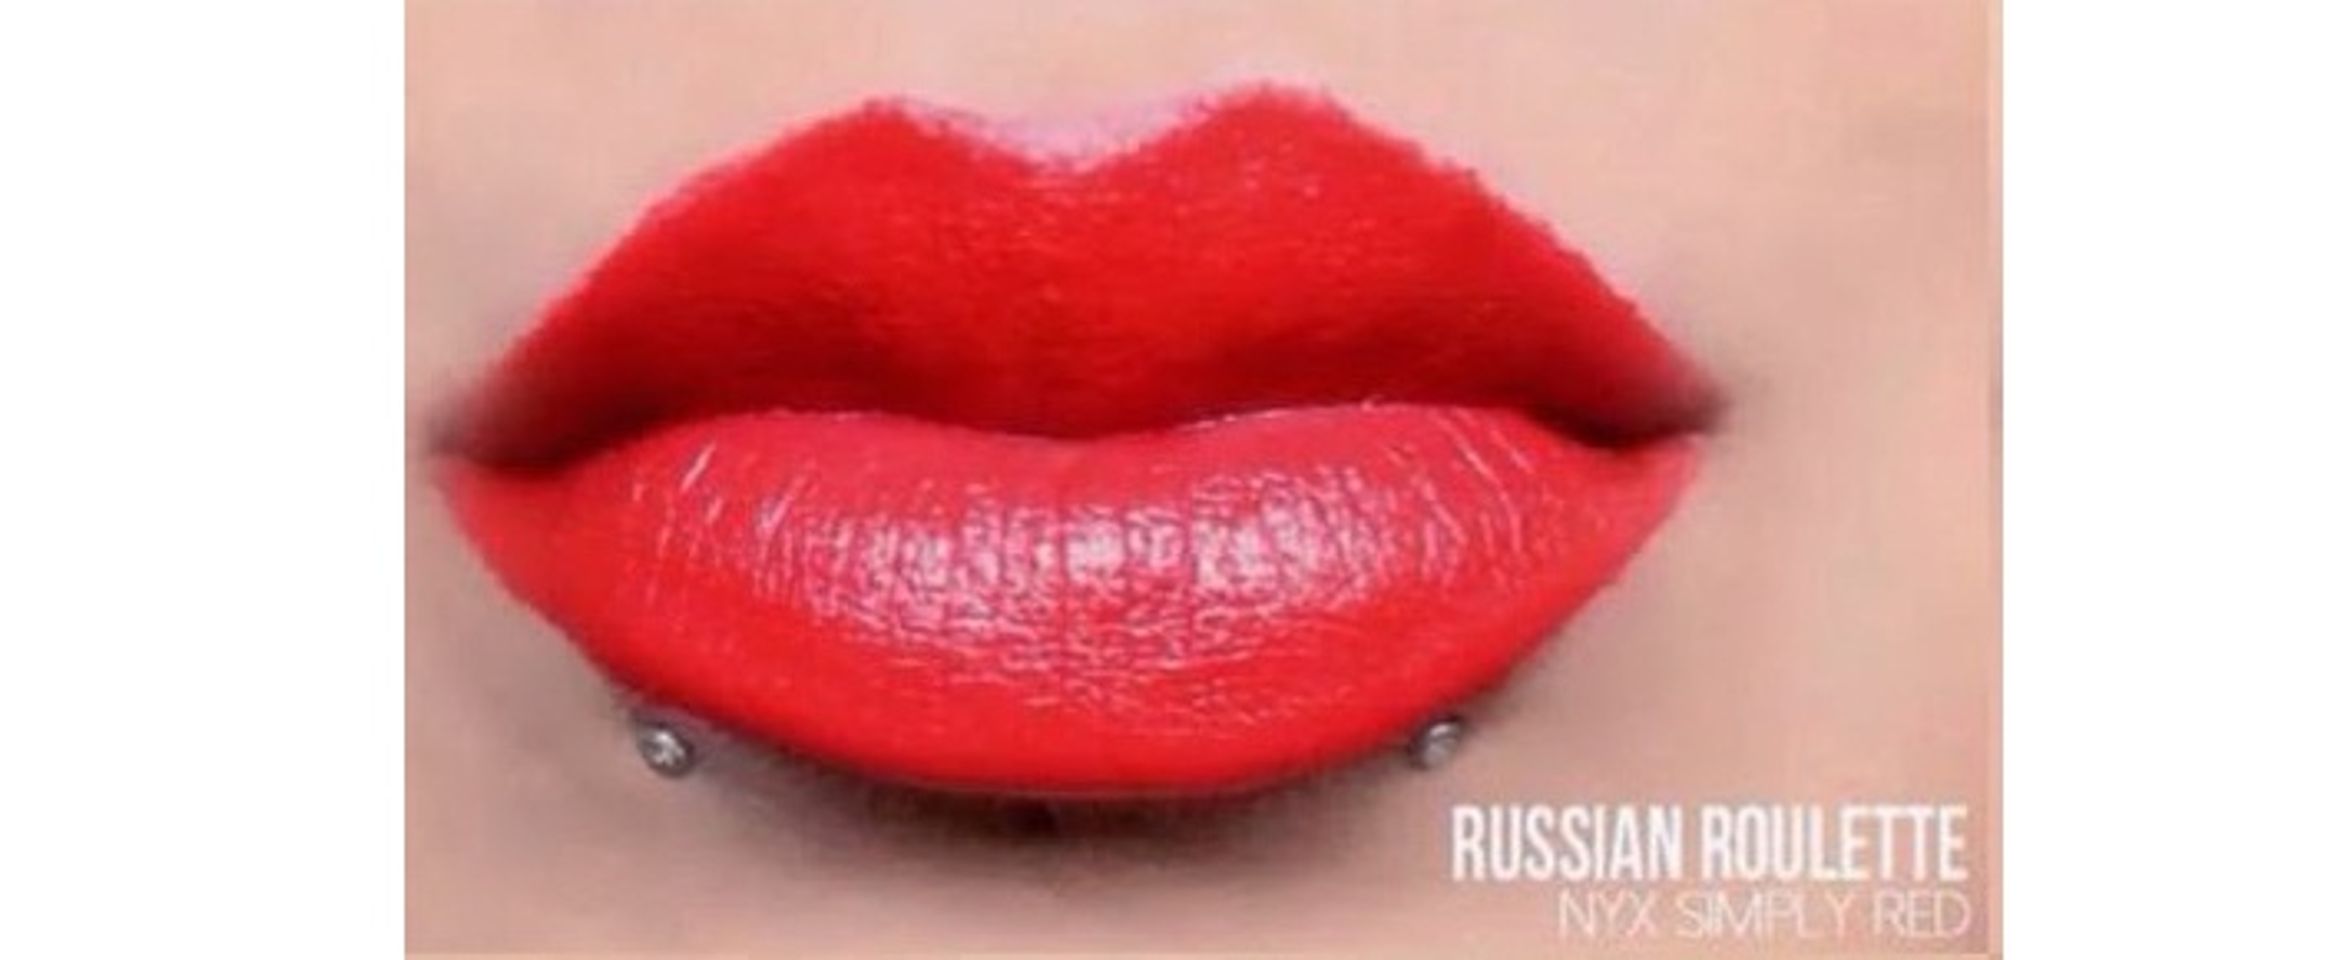 Son Nyx Simply Red Lip Cream SR01 Russian Roulette cho môi căng mọng, mềm mịn